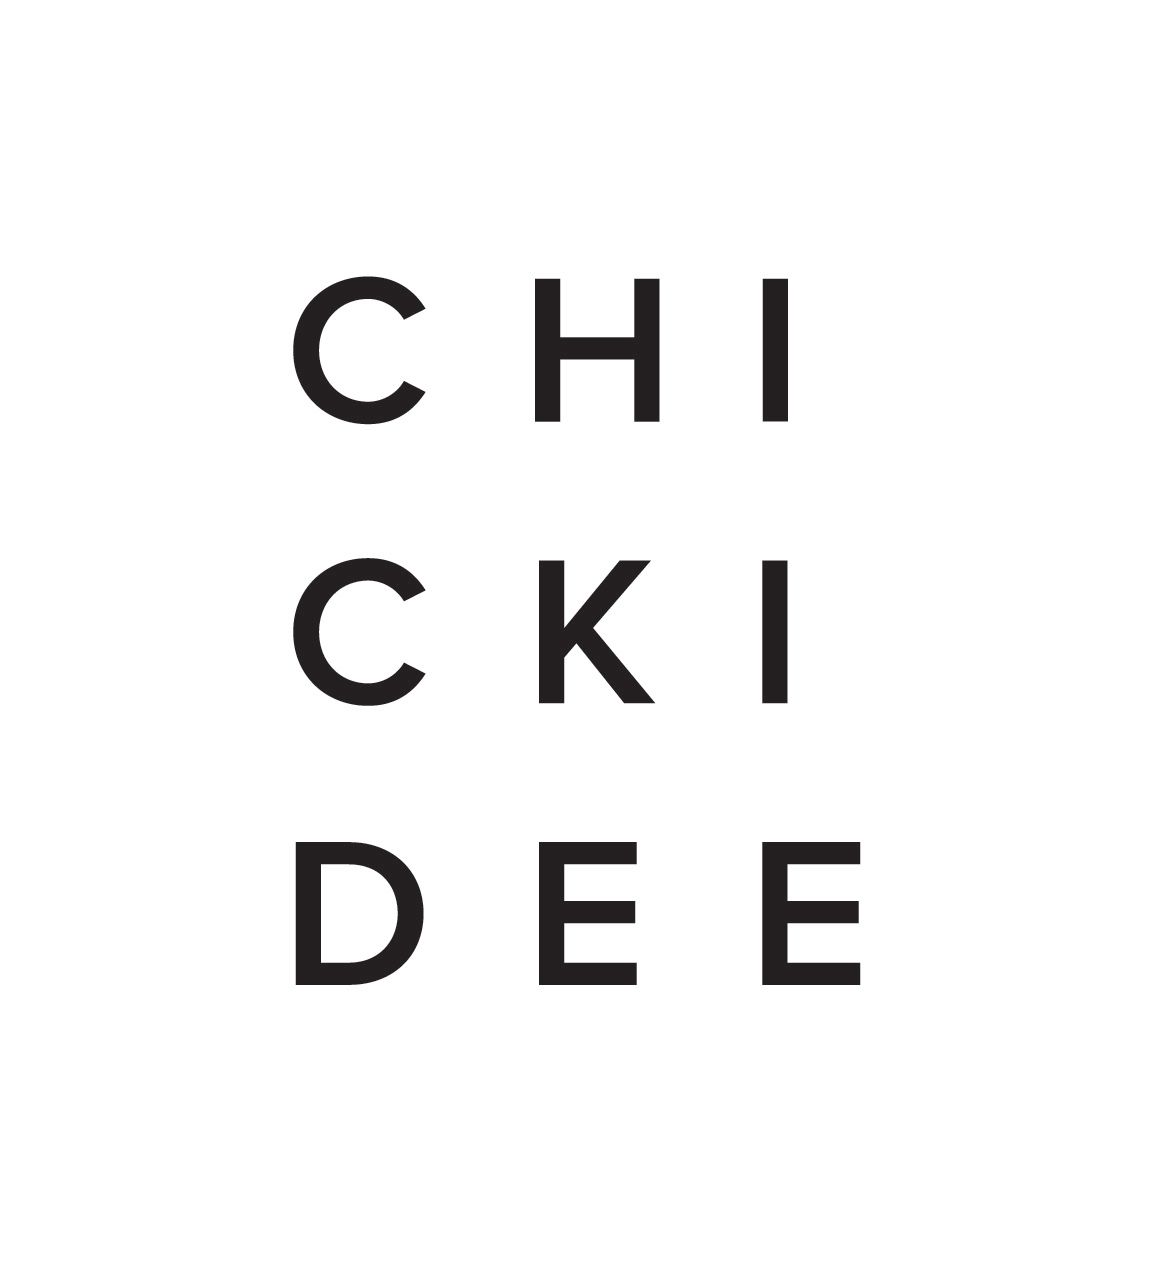 Chickidee